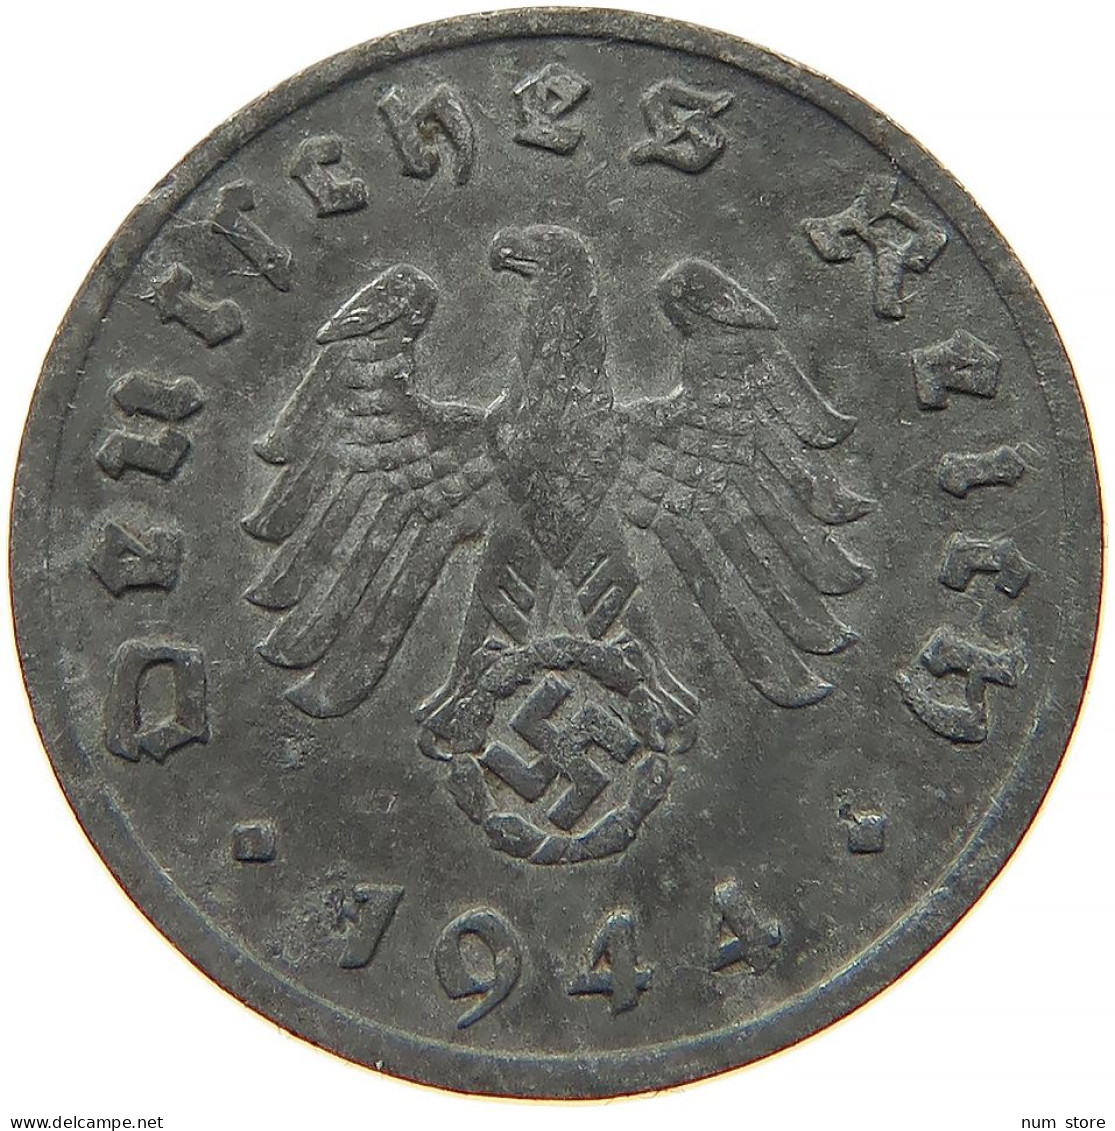 GERMANY 1 REICHSPFENNIG 1944 F #s091 0989 - 1 Reichspfennig